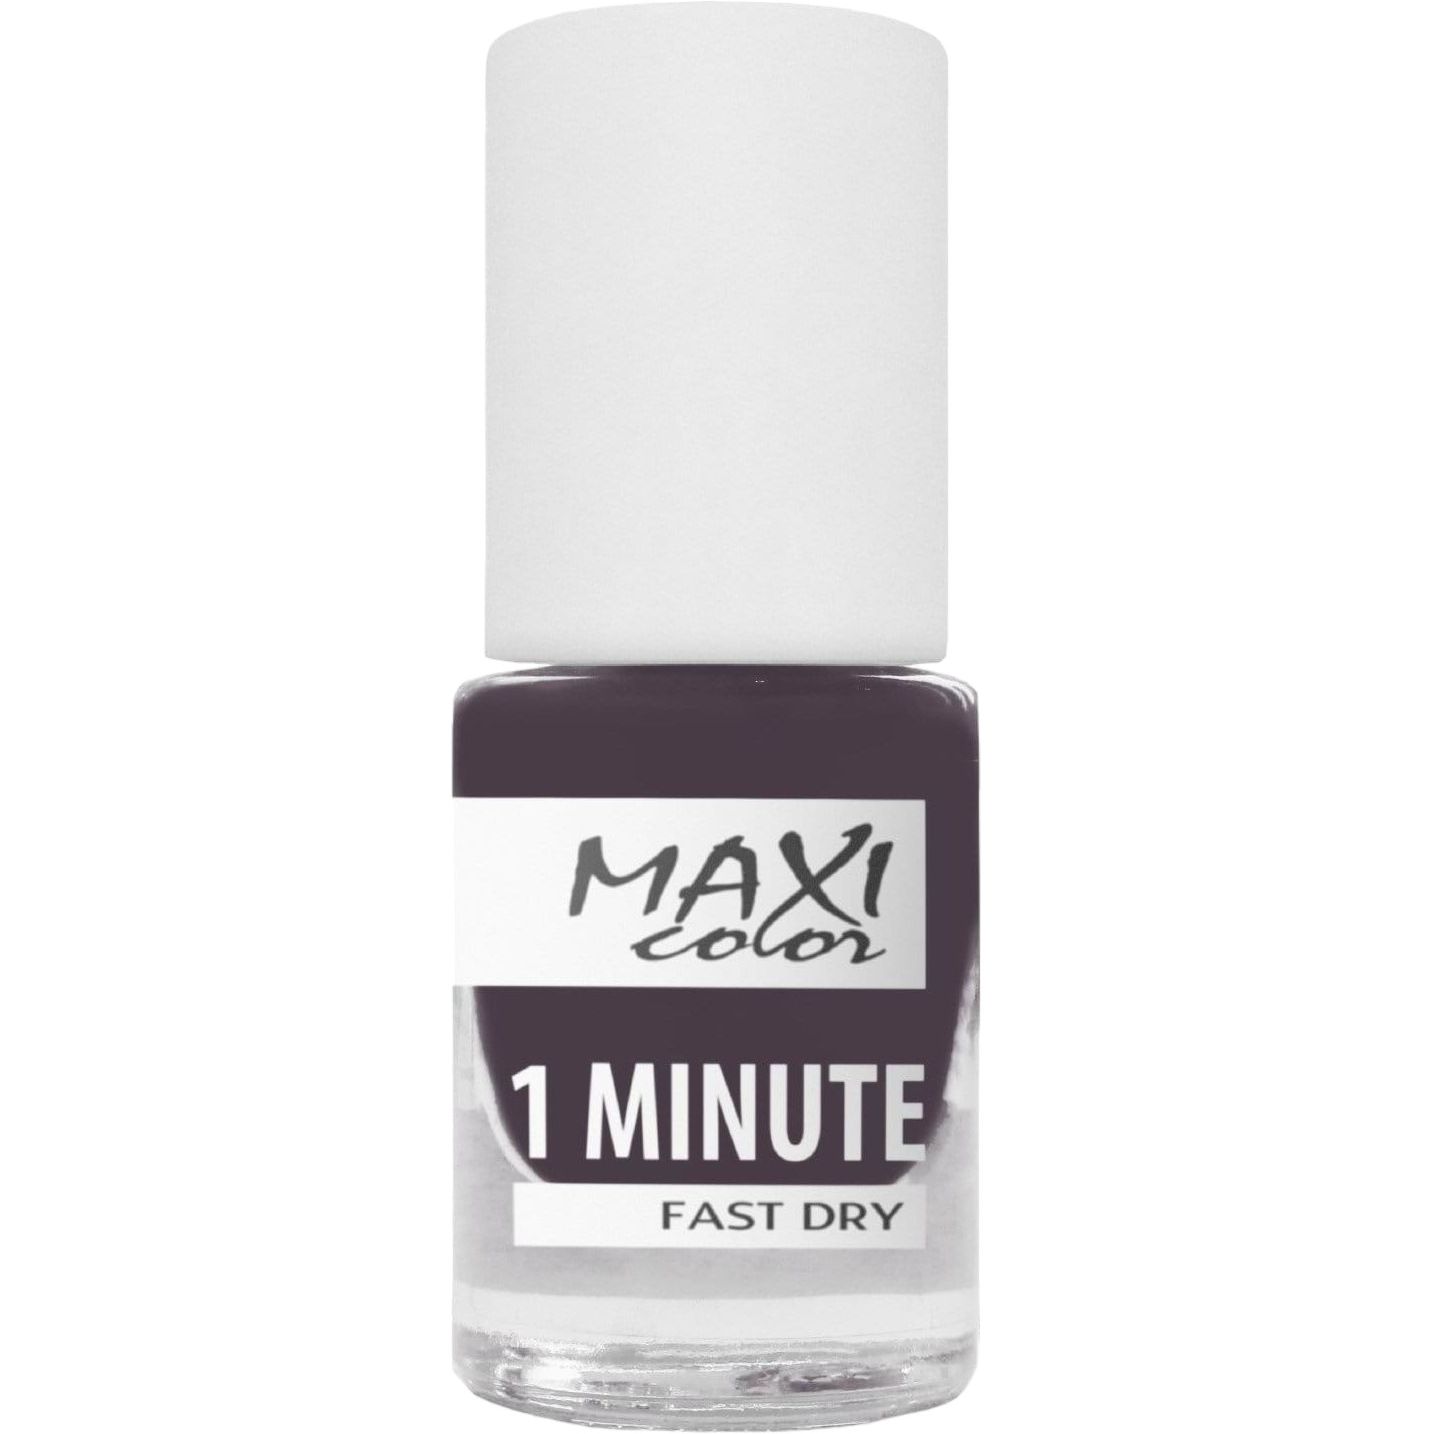 Лак для ногтей Maxi Color 1 Minute Fast Dry тон 033, 6 мл - фото 1